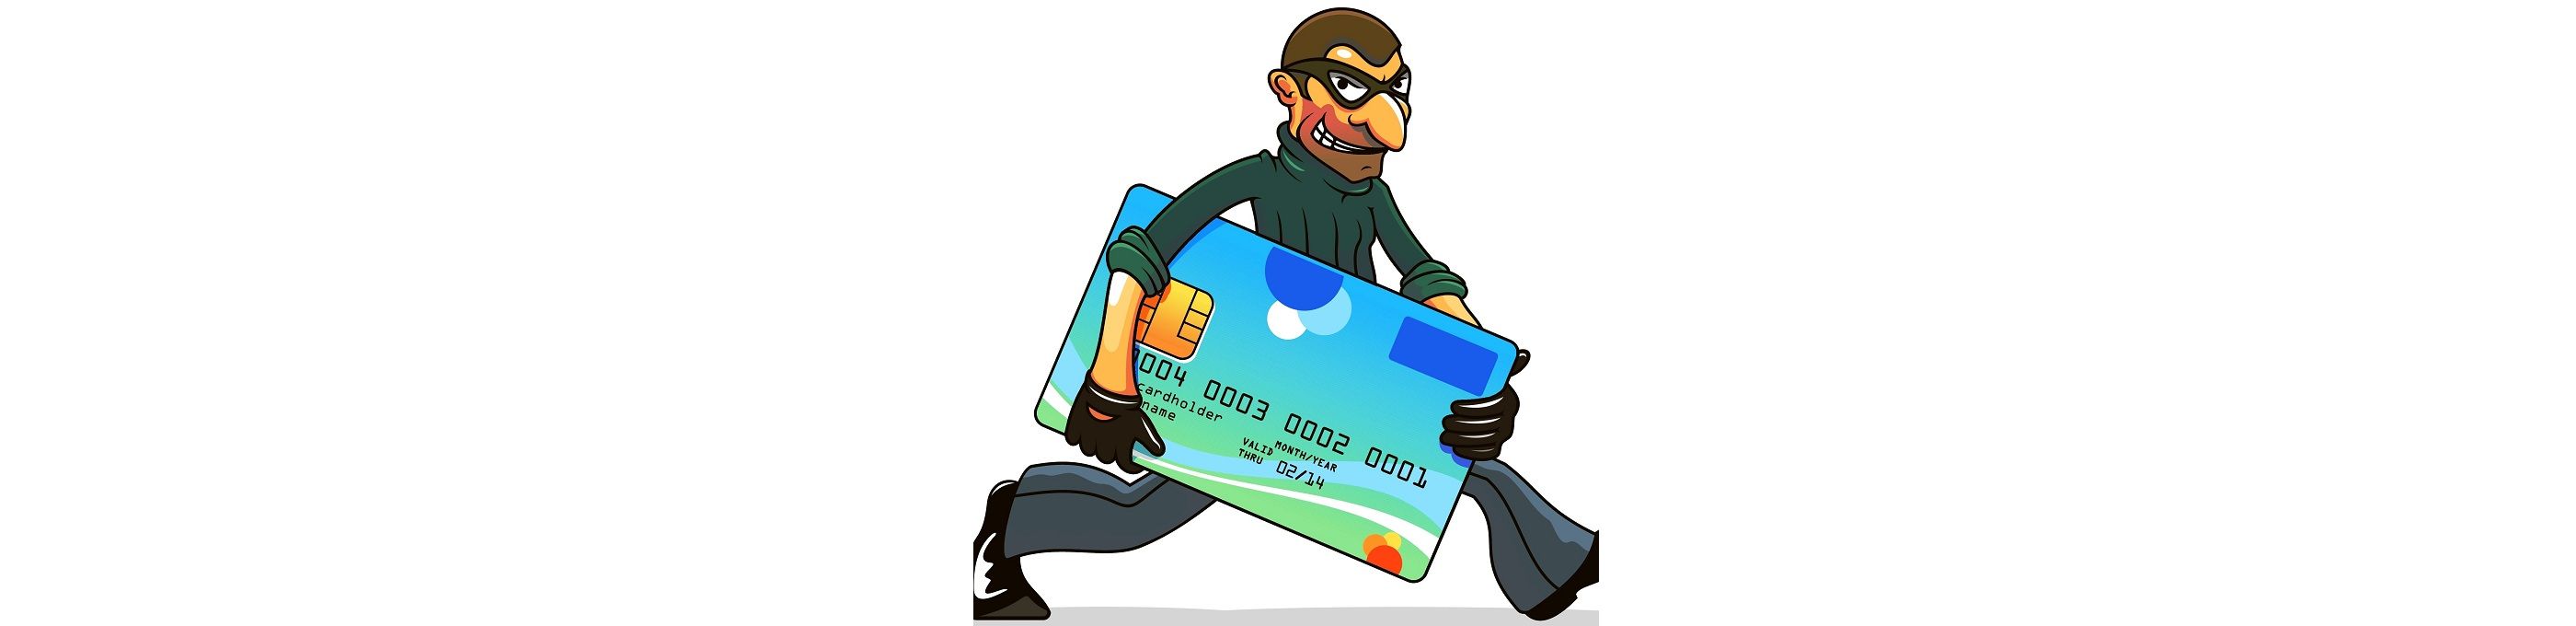 Все чаще и чаще мошенники получают доступ к персональным данным и похищают деньги клиентов. Что делать если это произошло, и кто компенсирует потерю?